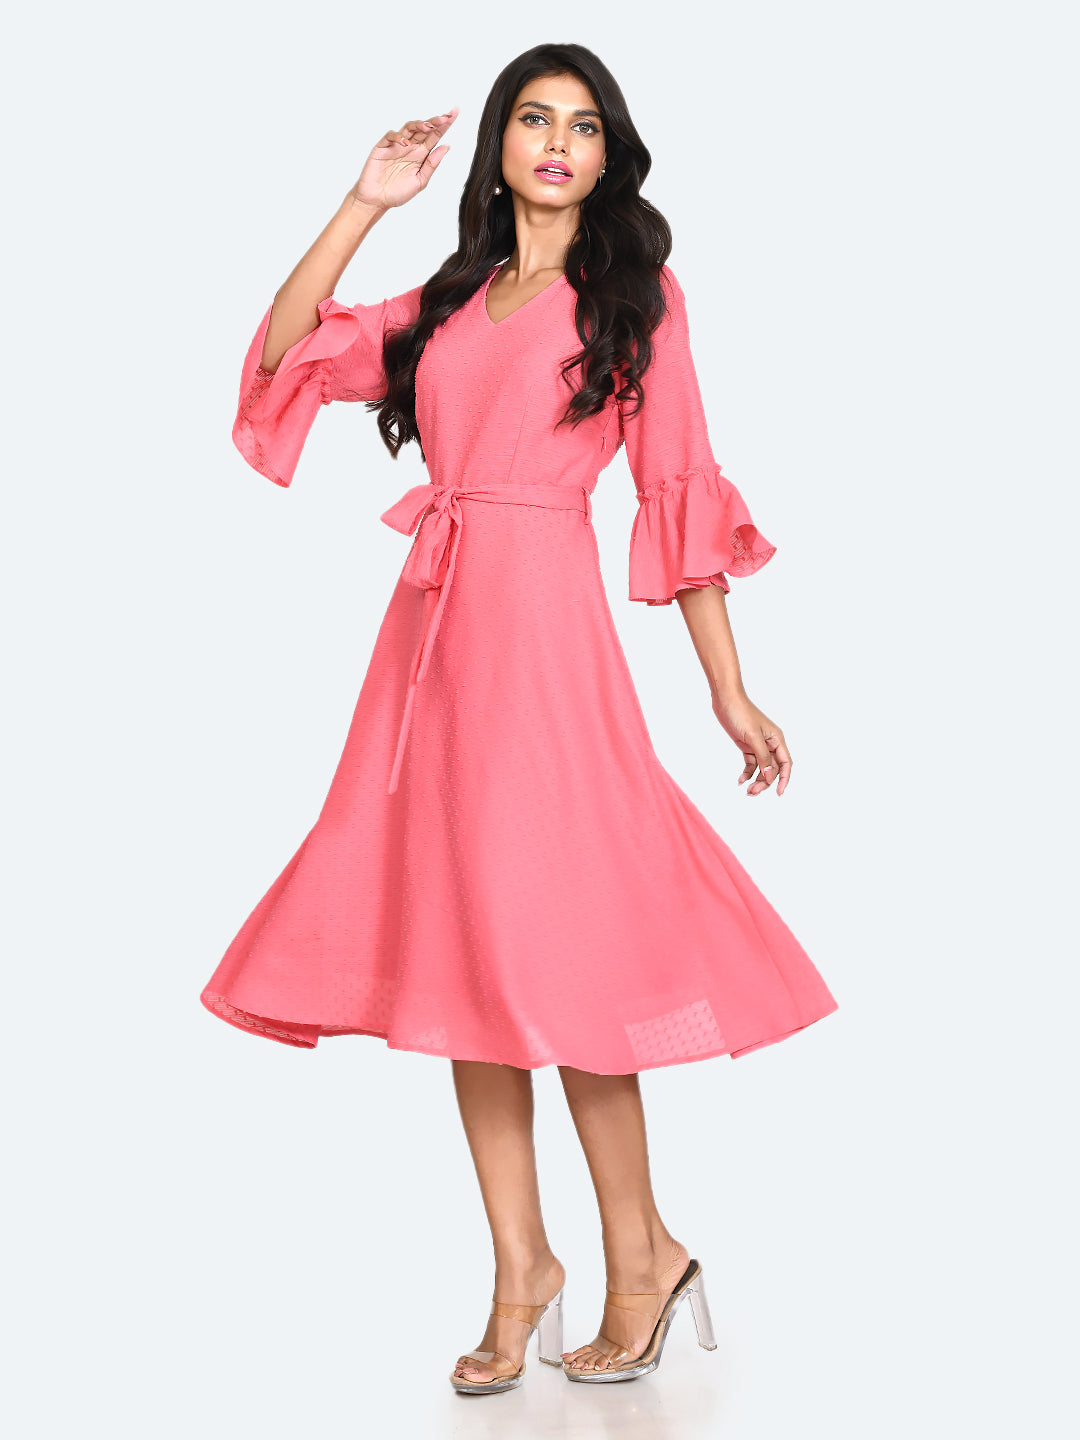 Beulah London Ahana Blush Pink Crepe Midi Dress - Kate Middleton Dresses -  Kate's Closet